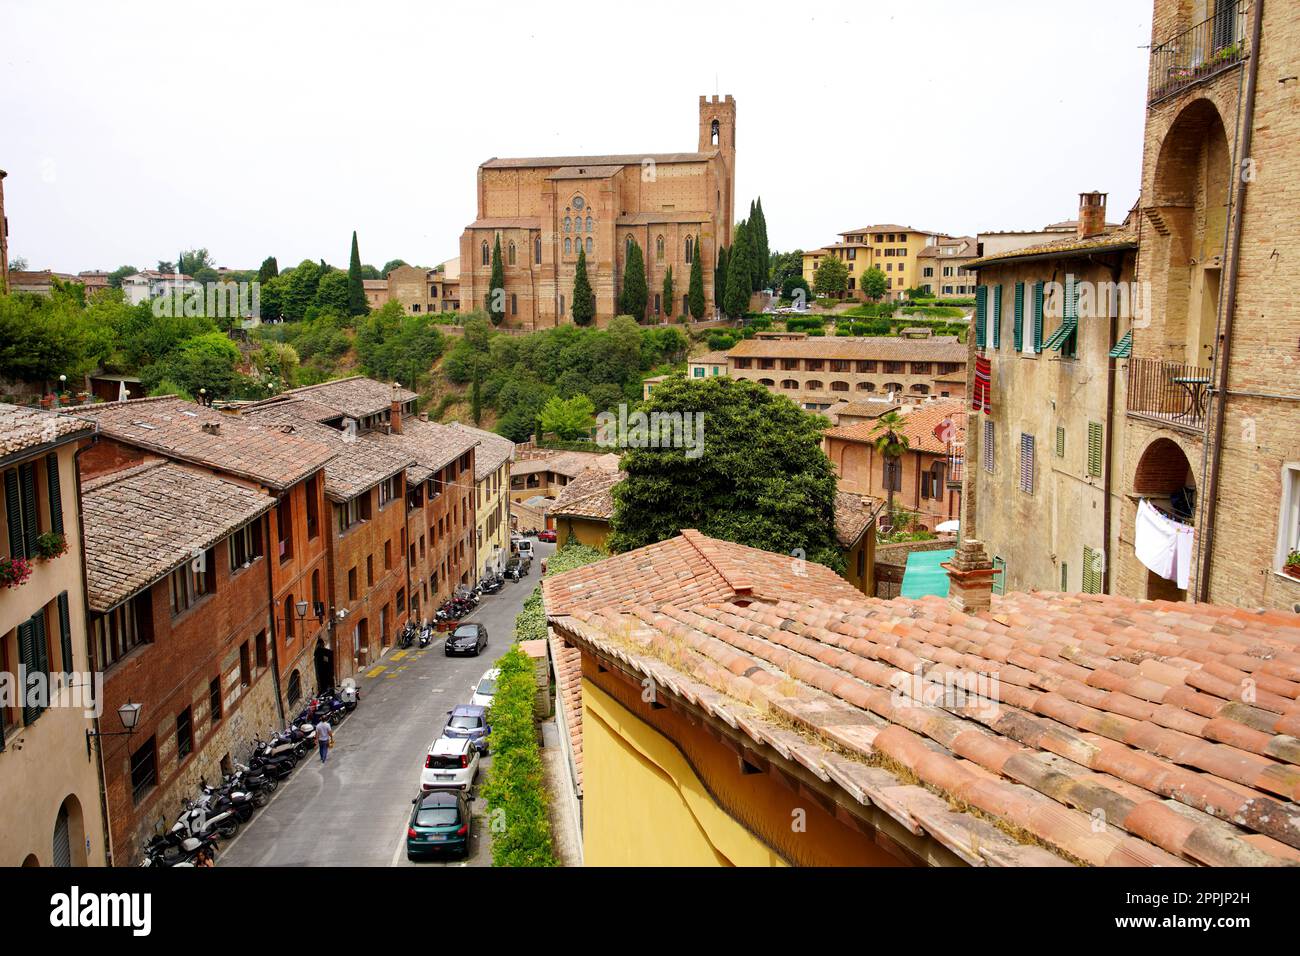 Paysage urbain de la ville médiévale historique de Sienne, Toscane, Italie Banque D'Images